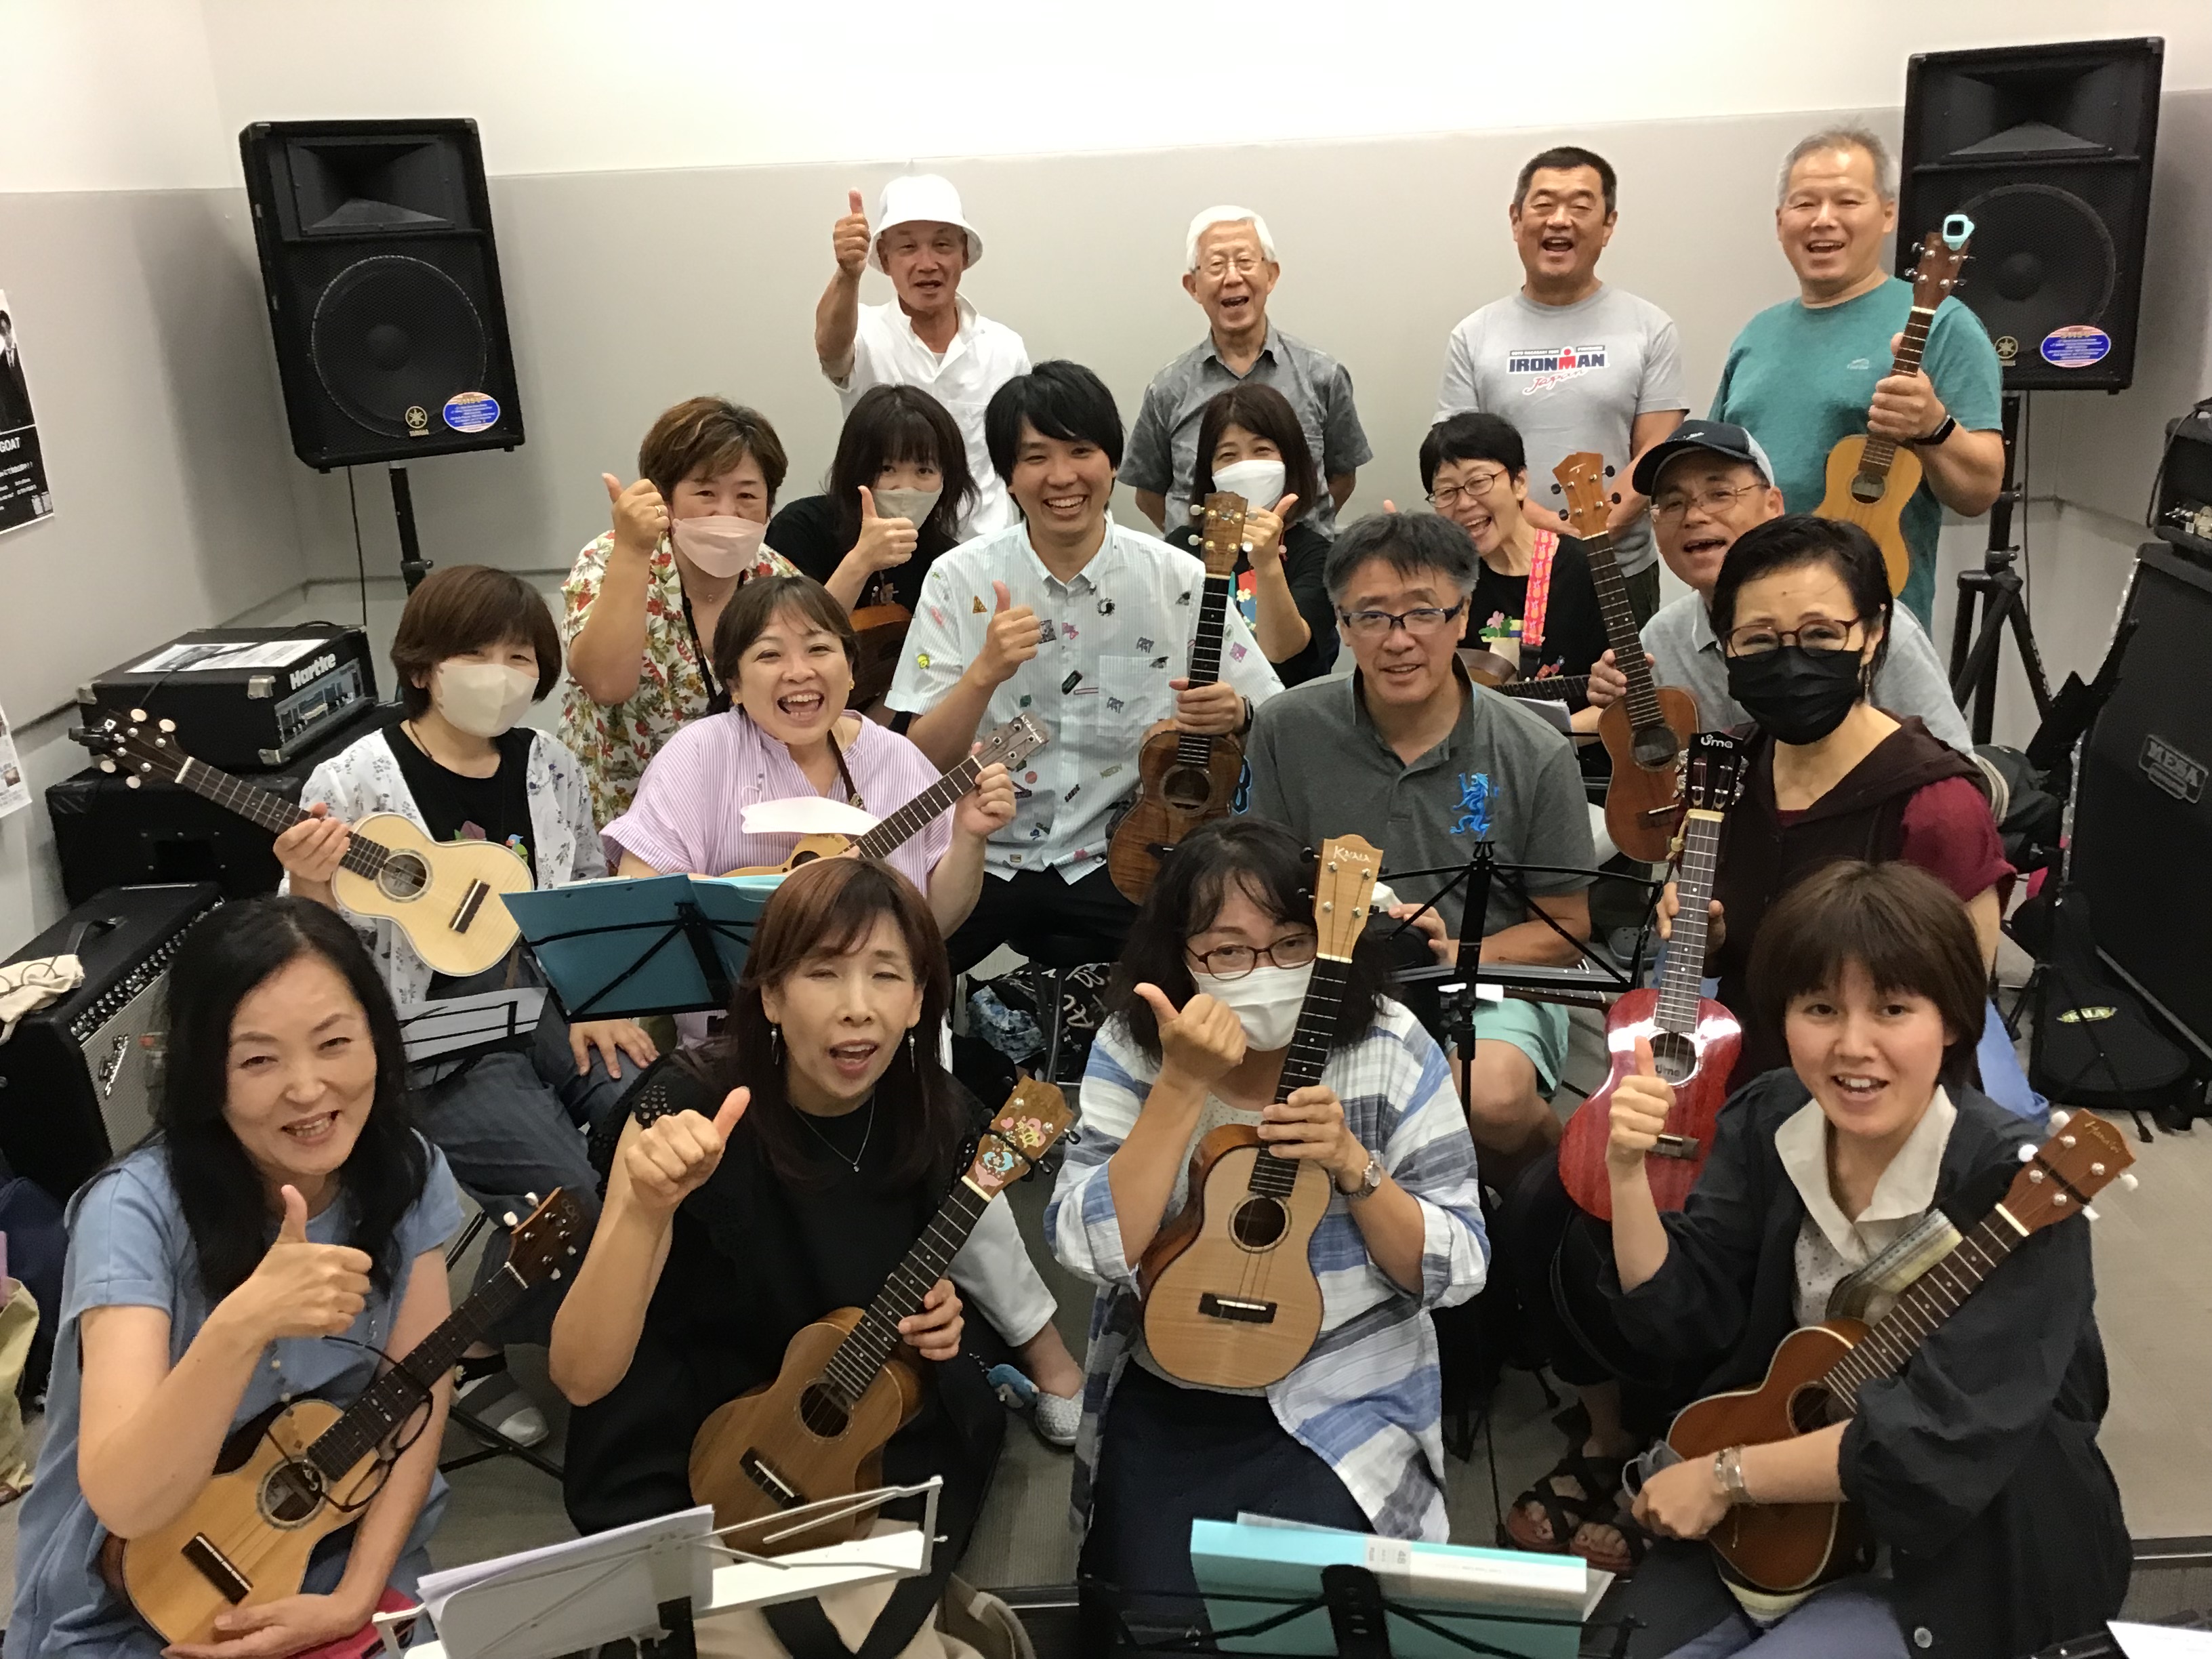 8月6日(日)に、ウクレレプレイヤーの小竹遼さんをお迎えして、ミニライブとソロウクレレ講座を実施いたしました。コロナ禍以降、プロの奏者をの方を迎てのイベントは久しぶりでしたが、多くのお客様にご来場していただき、盛会の内に終了する事が出来ました。 ミニ・ライブ ソロウクレレ講座 ソロウクレレ講座は16 […]